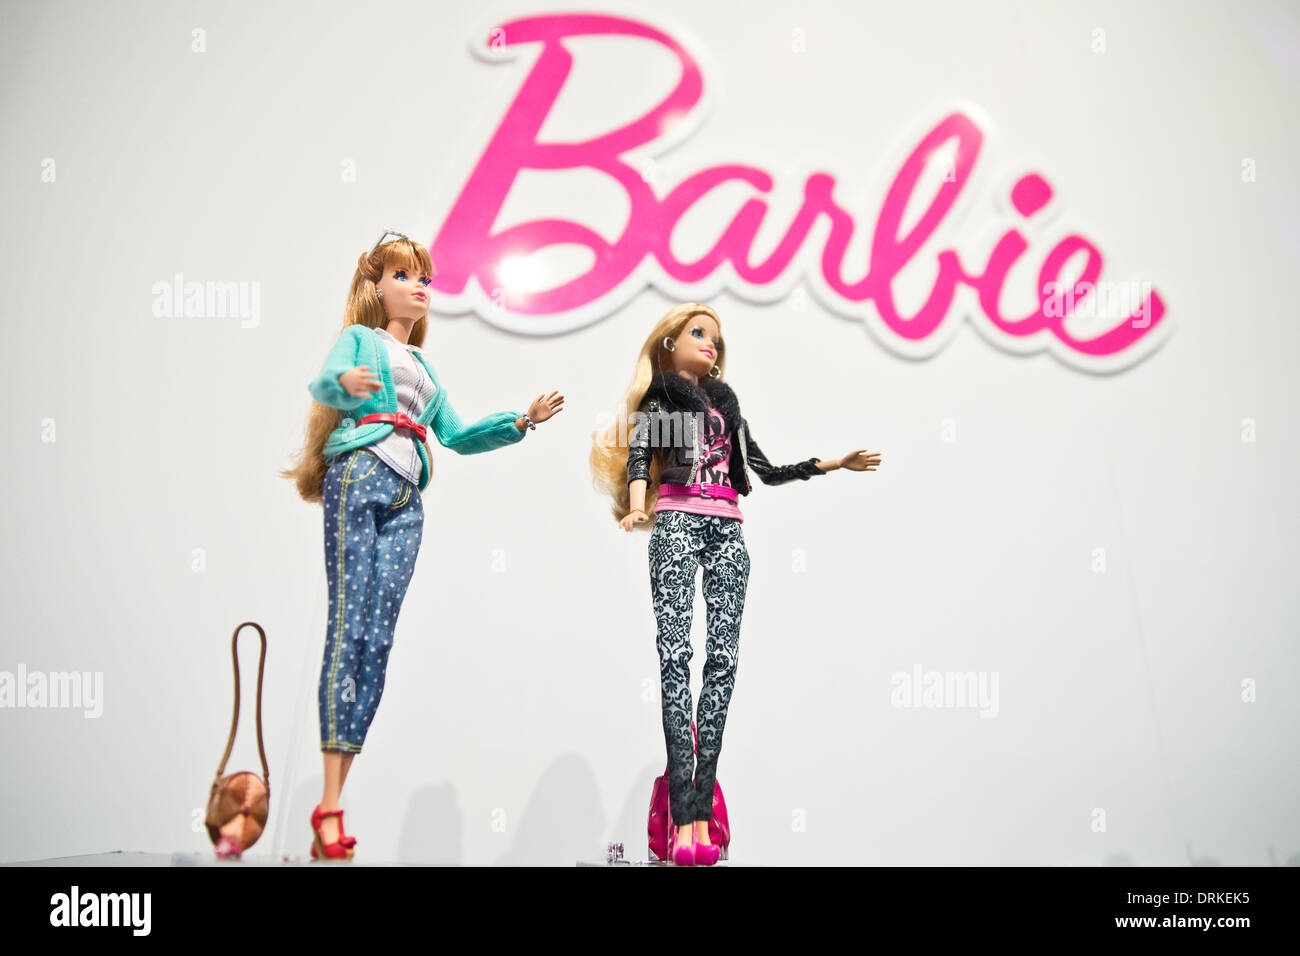 Norimberga, Germania. 28 gen 2014. Il nuovo Deluxe Fashionista Barbie è raffigurato durante le novità mostra al sessantacinquesimo Salone Internazionale di Norimberga, Germania, 28 gennaio 2014. Foto: Daniel Karmann/dpa/Alamy Live News Foto Stock